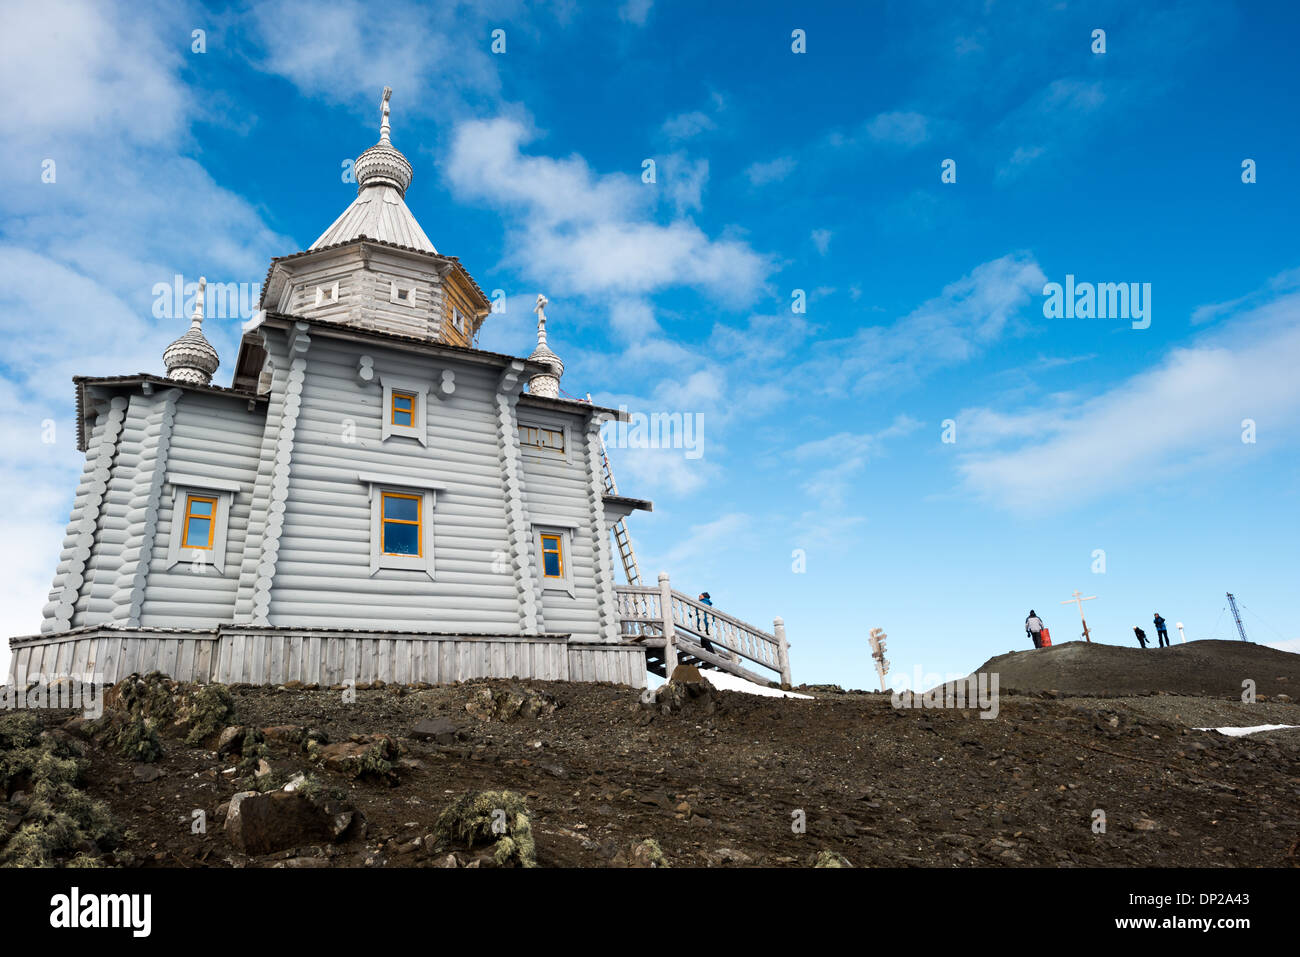 L'ANTARCTIQUE - l'église Trinity est une église orthodoxe russe à King George Island dans les îles Shetland du Sud. Il est situé sur une petite colline rocheuse près de la station russe Bellingshausen base de recherche. Construit de cèdre sibérien et en pin avec renforts spéciaux contre les conditions météorologiques difficiles de l'Antarctique, l'Eglise de La Trinité a été consacrée en 2004 et est la plus méridionale de l'Église Orthodoxe église dans le monde. Banque D'Images